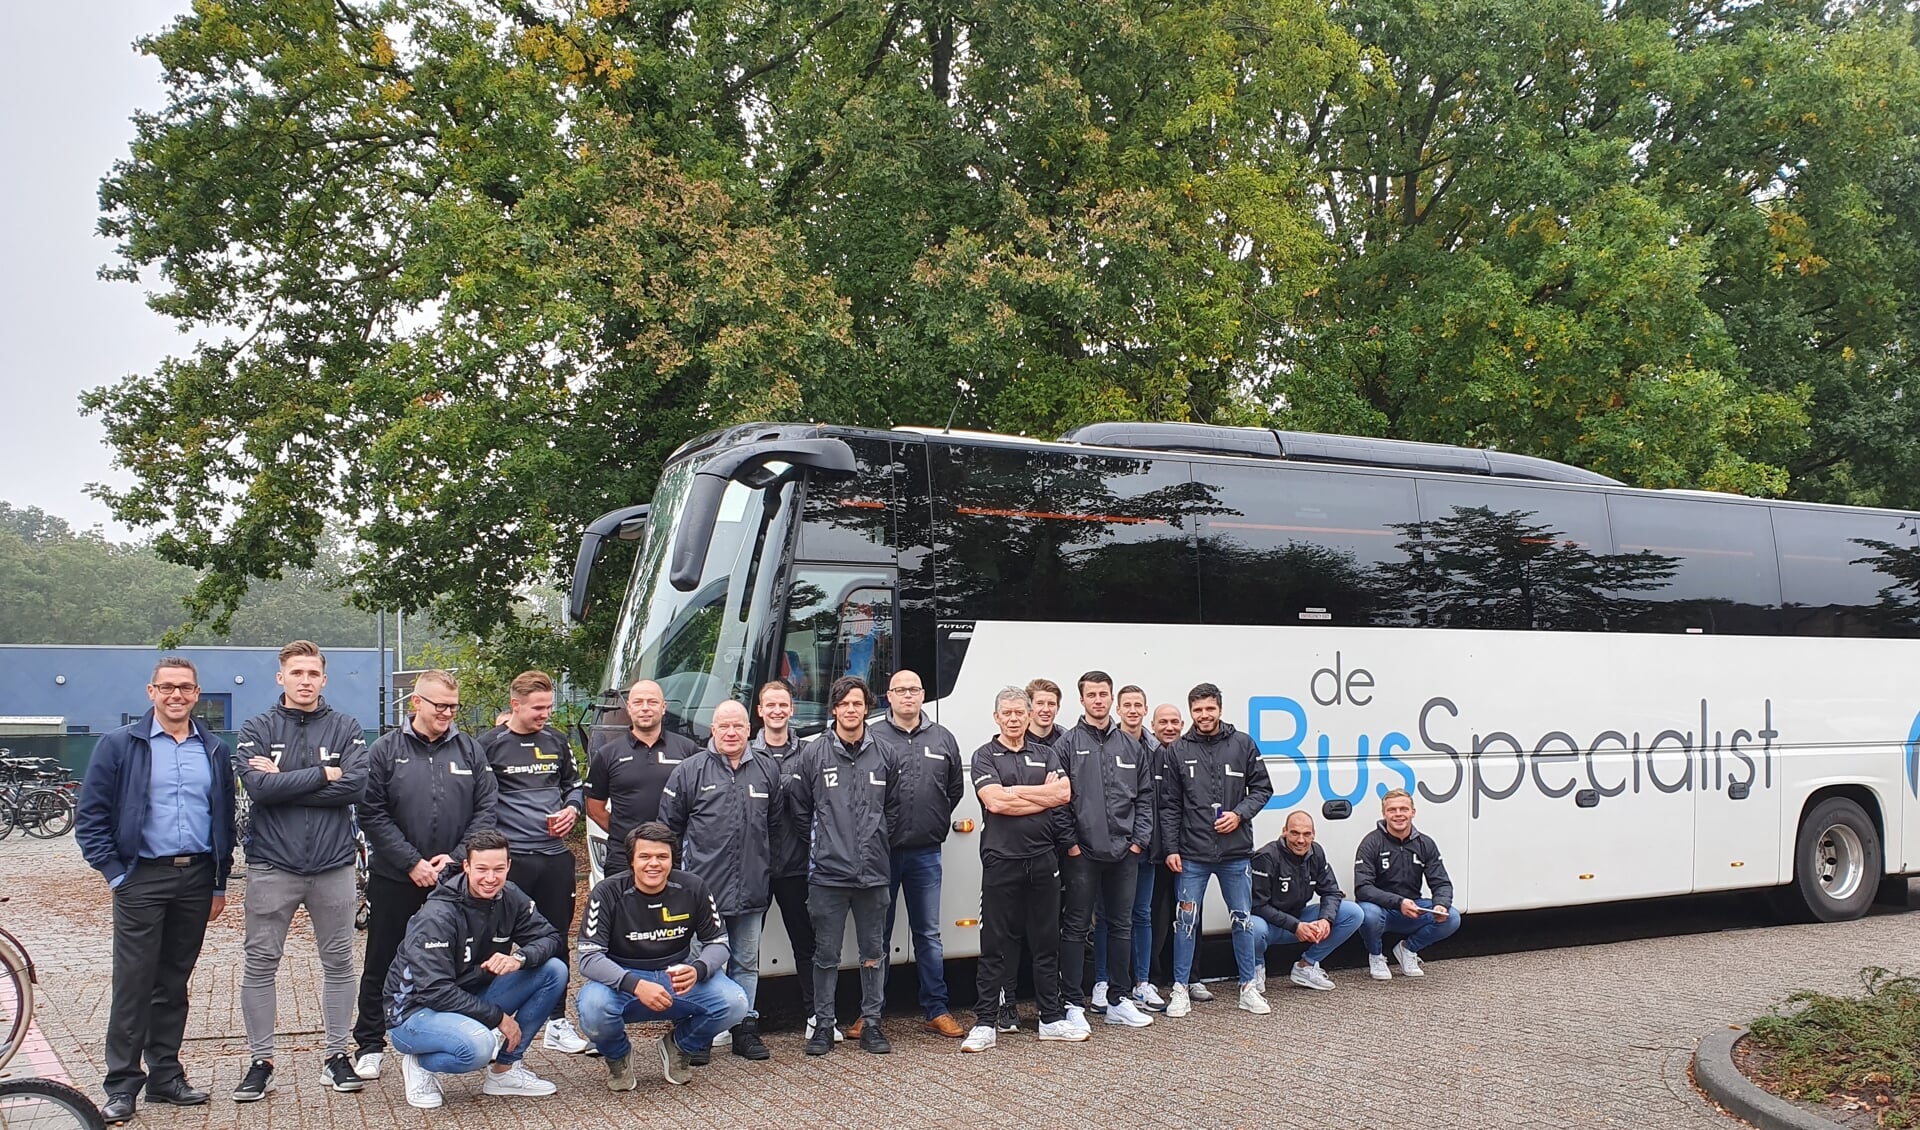 Eerste elftal VV lunteren bij touringcar van deBusSpecialist 